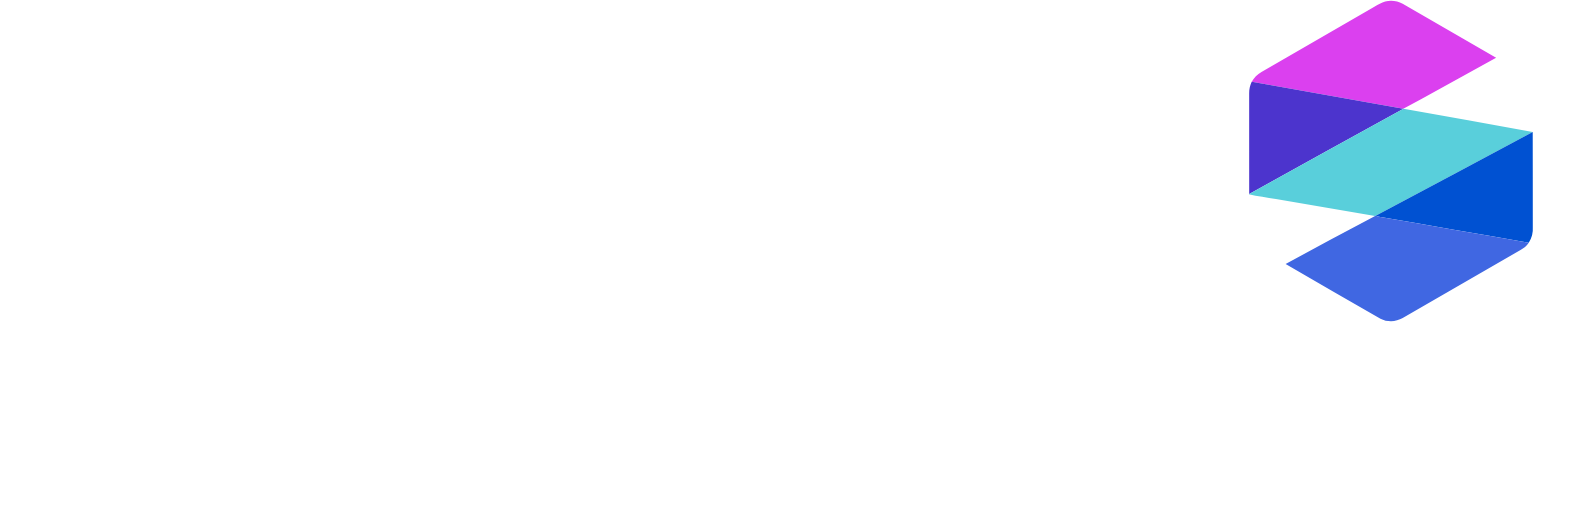 SomaLogic logo large for dark backgrounds (transparent PNG)